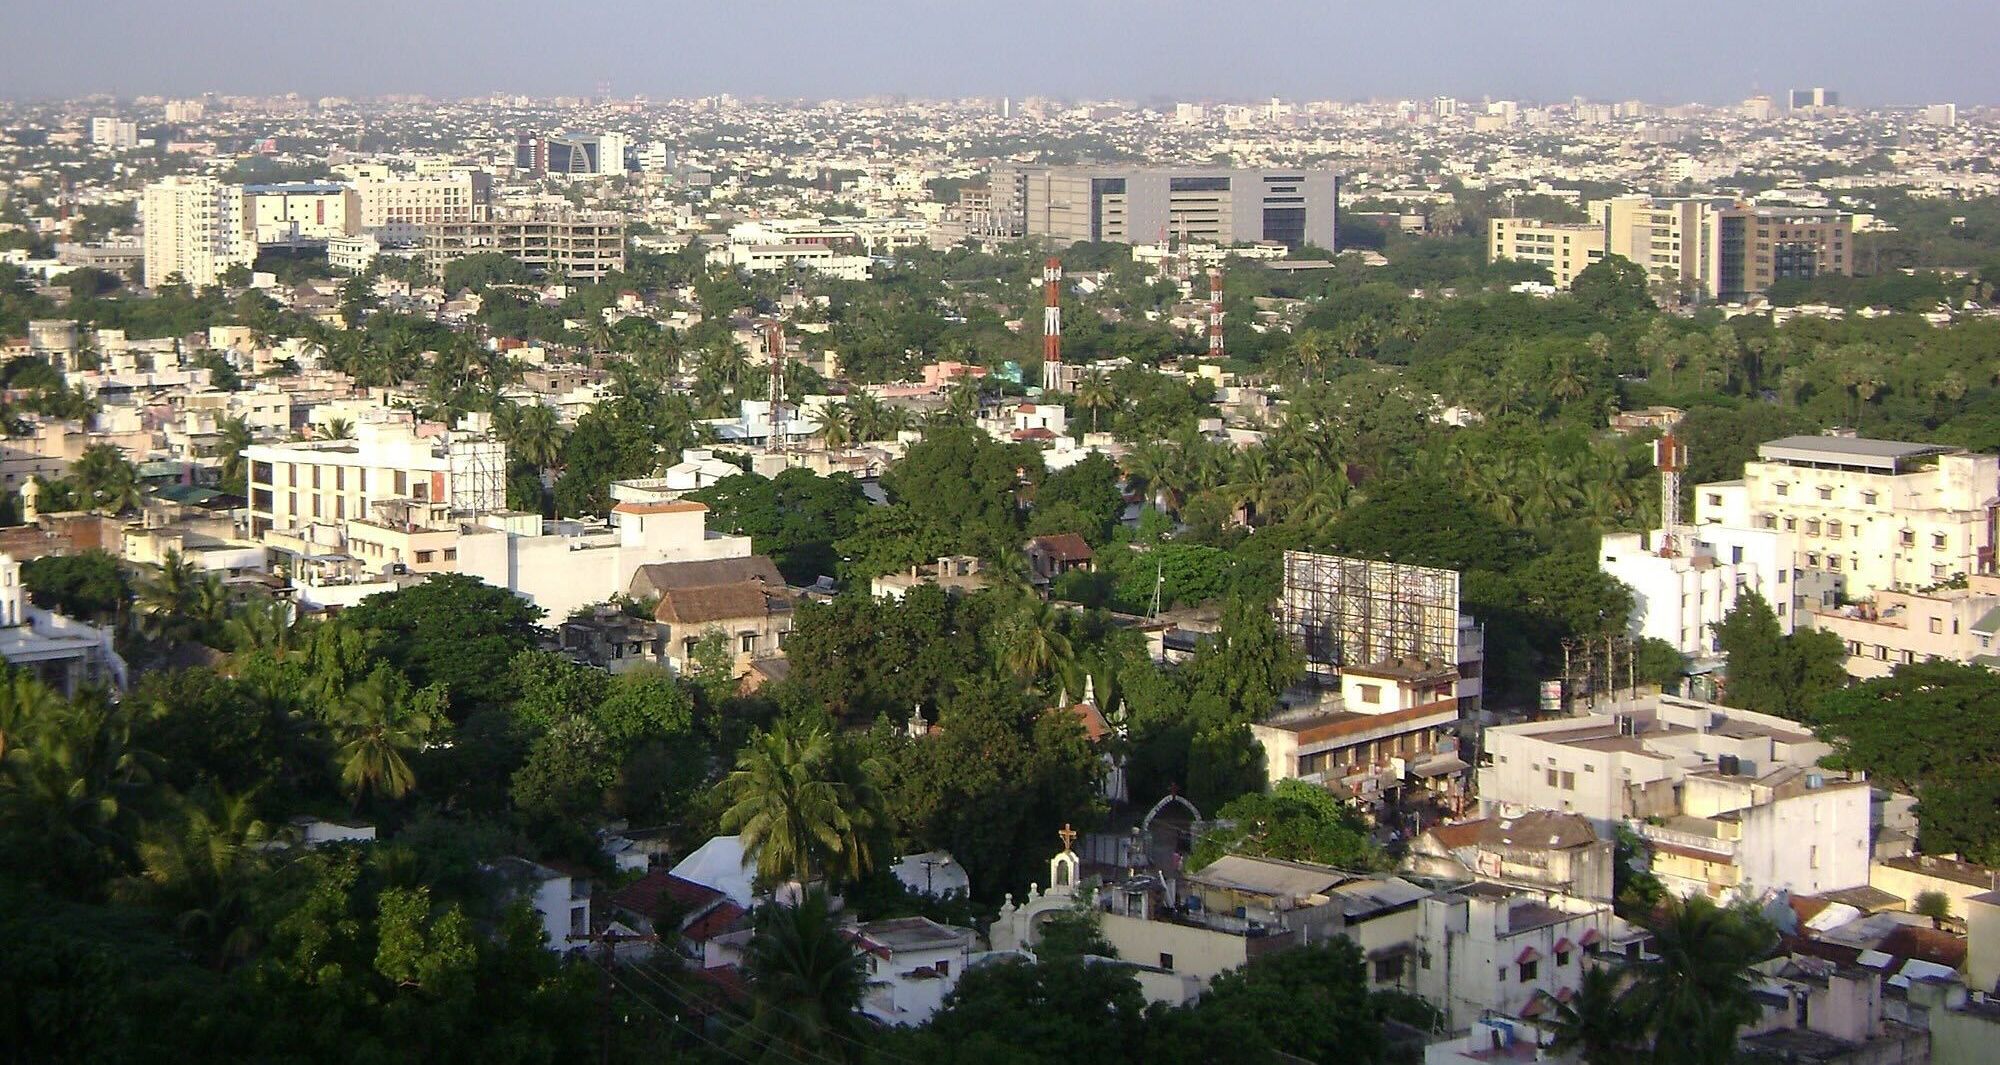 An aerial view of Chennai city.